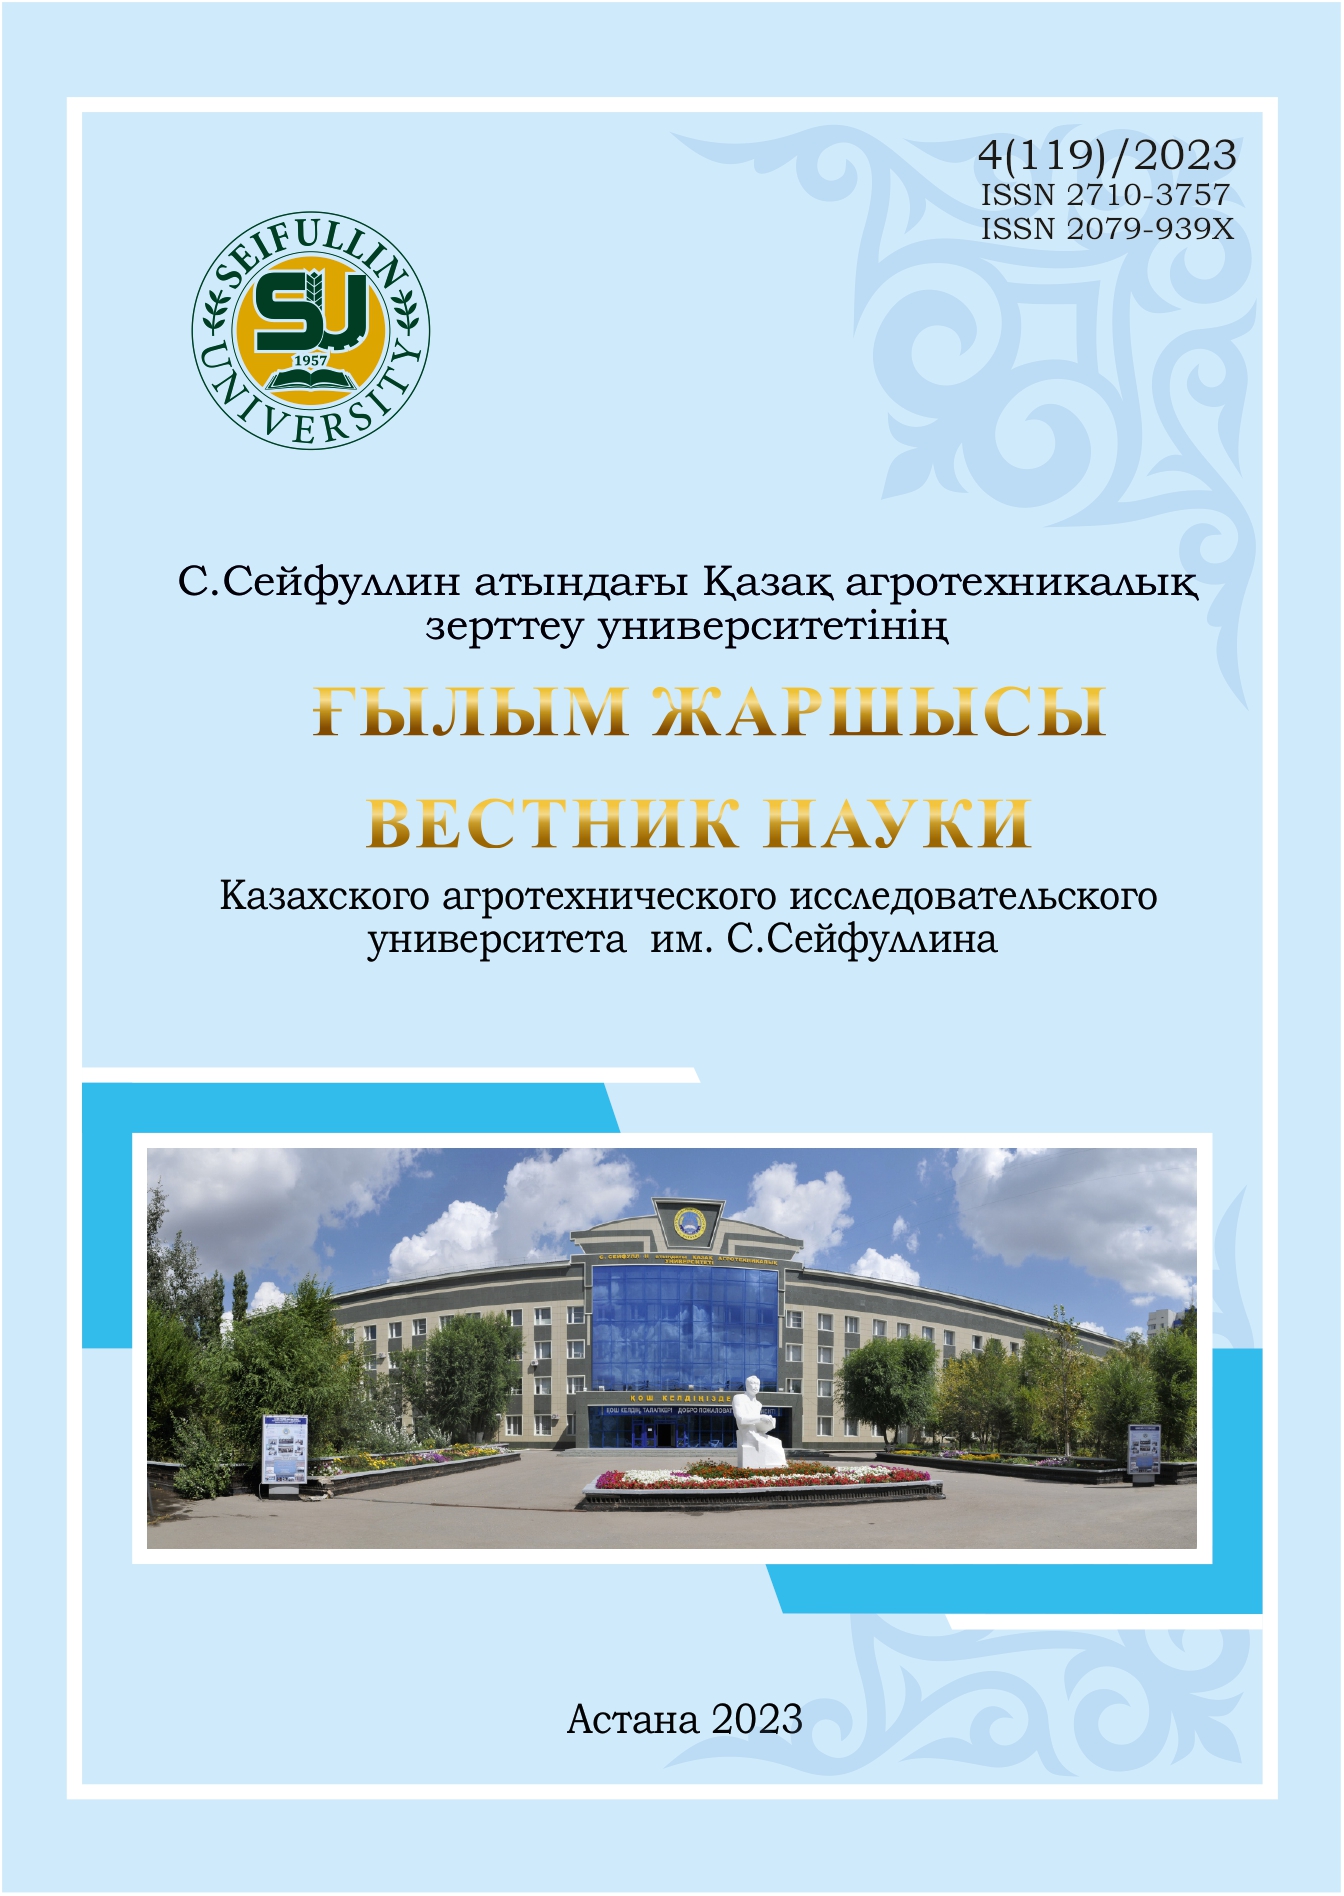 					Показать № 4(119) (2023): Вестник науки "Казахского агротехнического исследовательского университета им С. Сейфуллина"
				